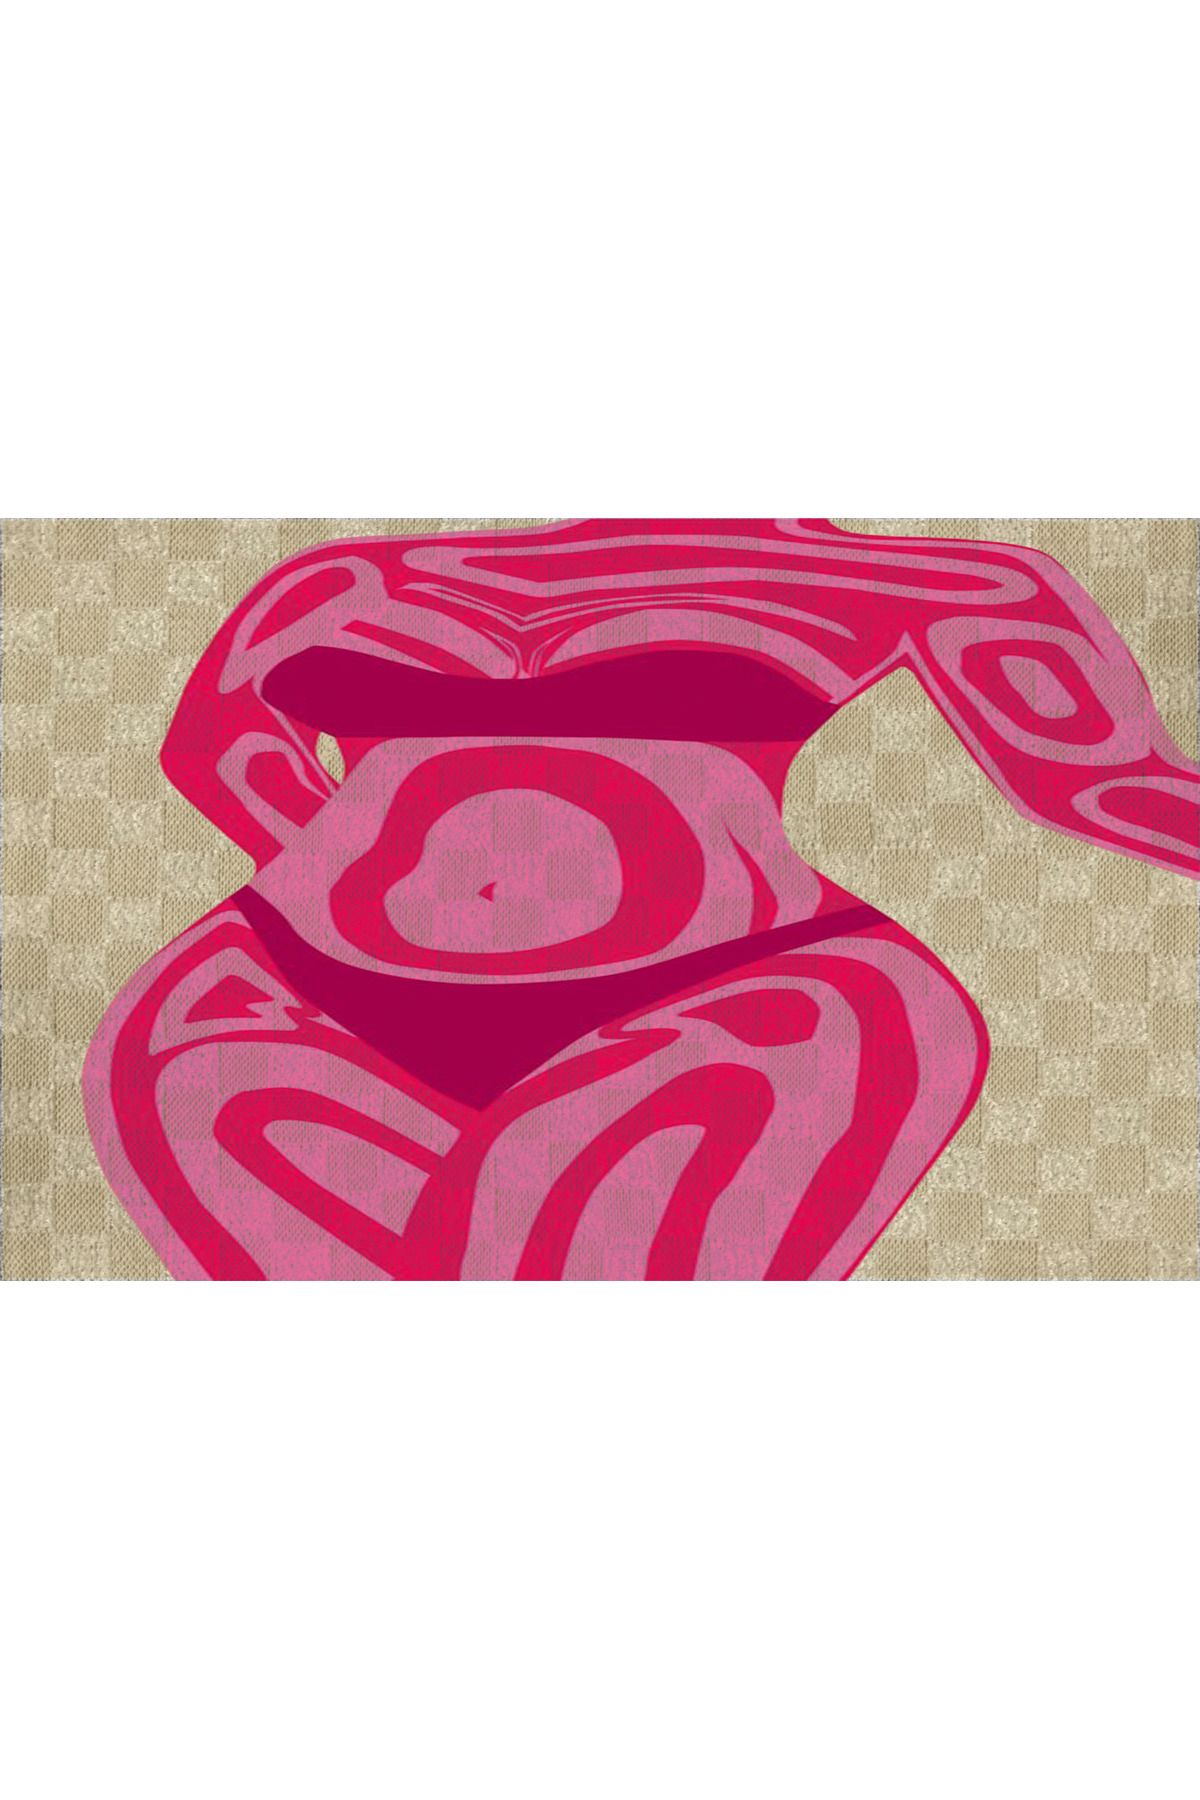 Rugs Modern Halı Pembe Temalı Kadın Manken Desenli Modern Dekoratif Banyo Paspası 90×60